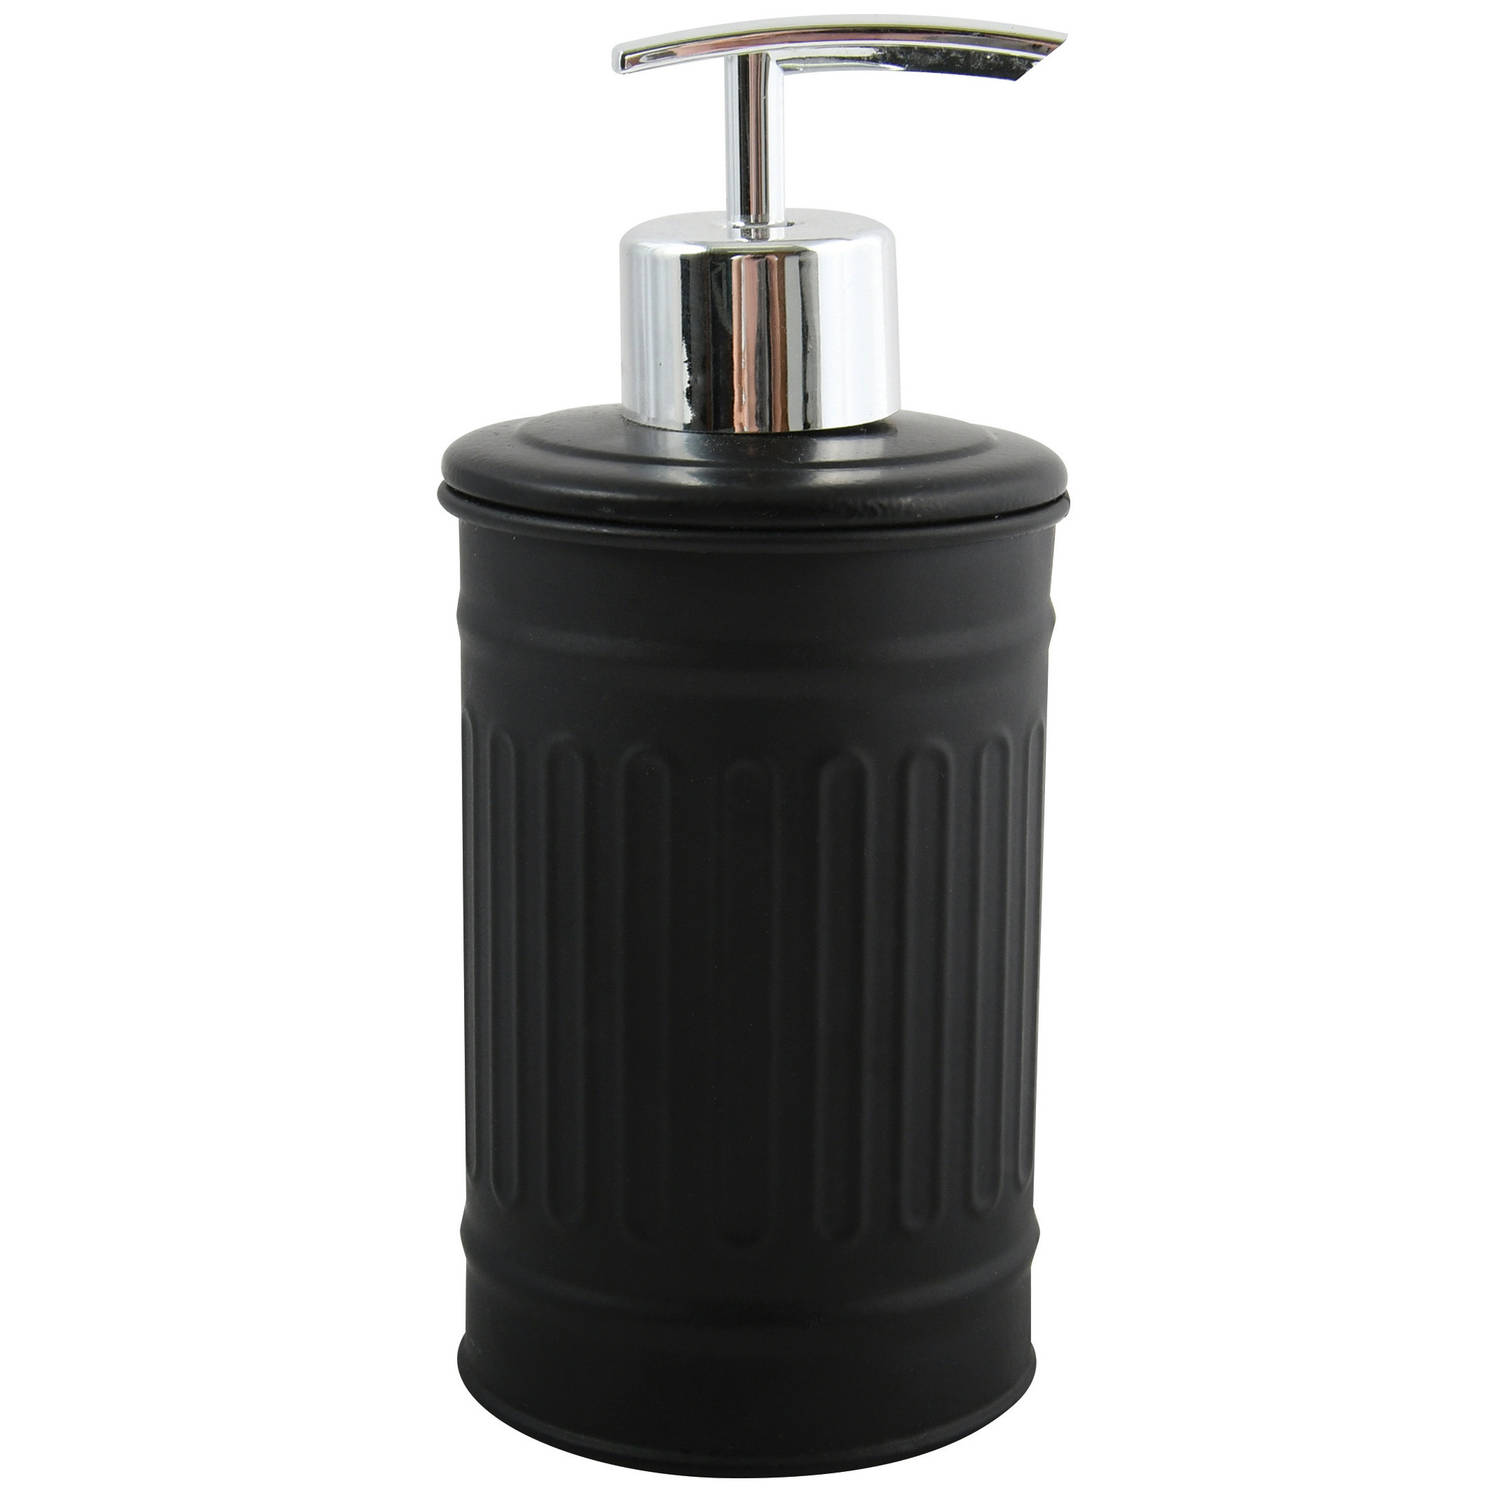 MSV Zeeppompje/dispenser - Industrial - metaal - zwart/zilver - 7.5 x 17 cm - 250 ml